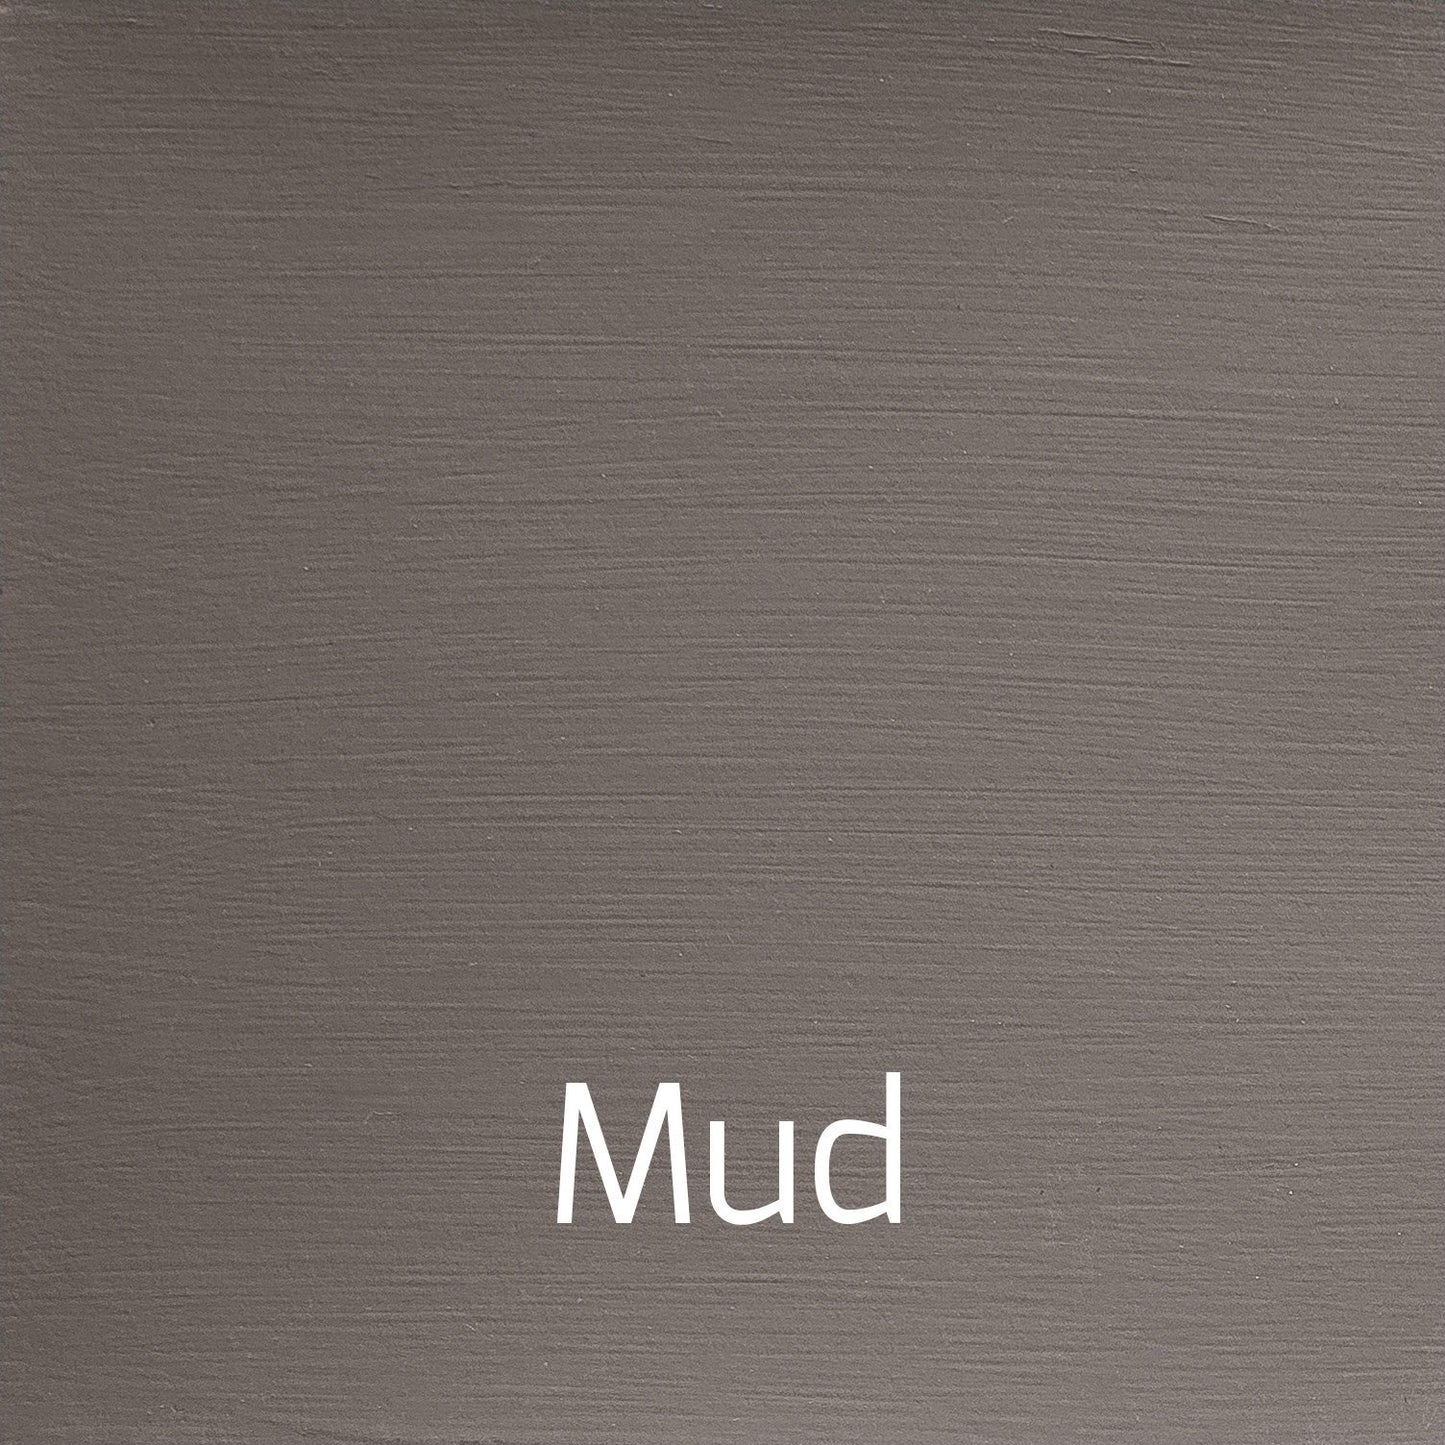 Mud - Versante Matt-Versante Matt-Autentico Paint Online